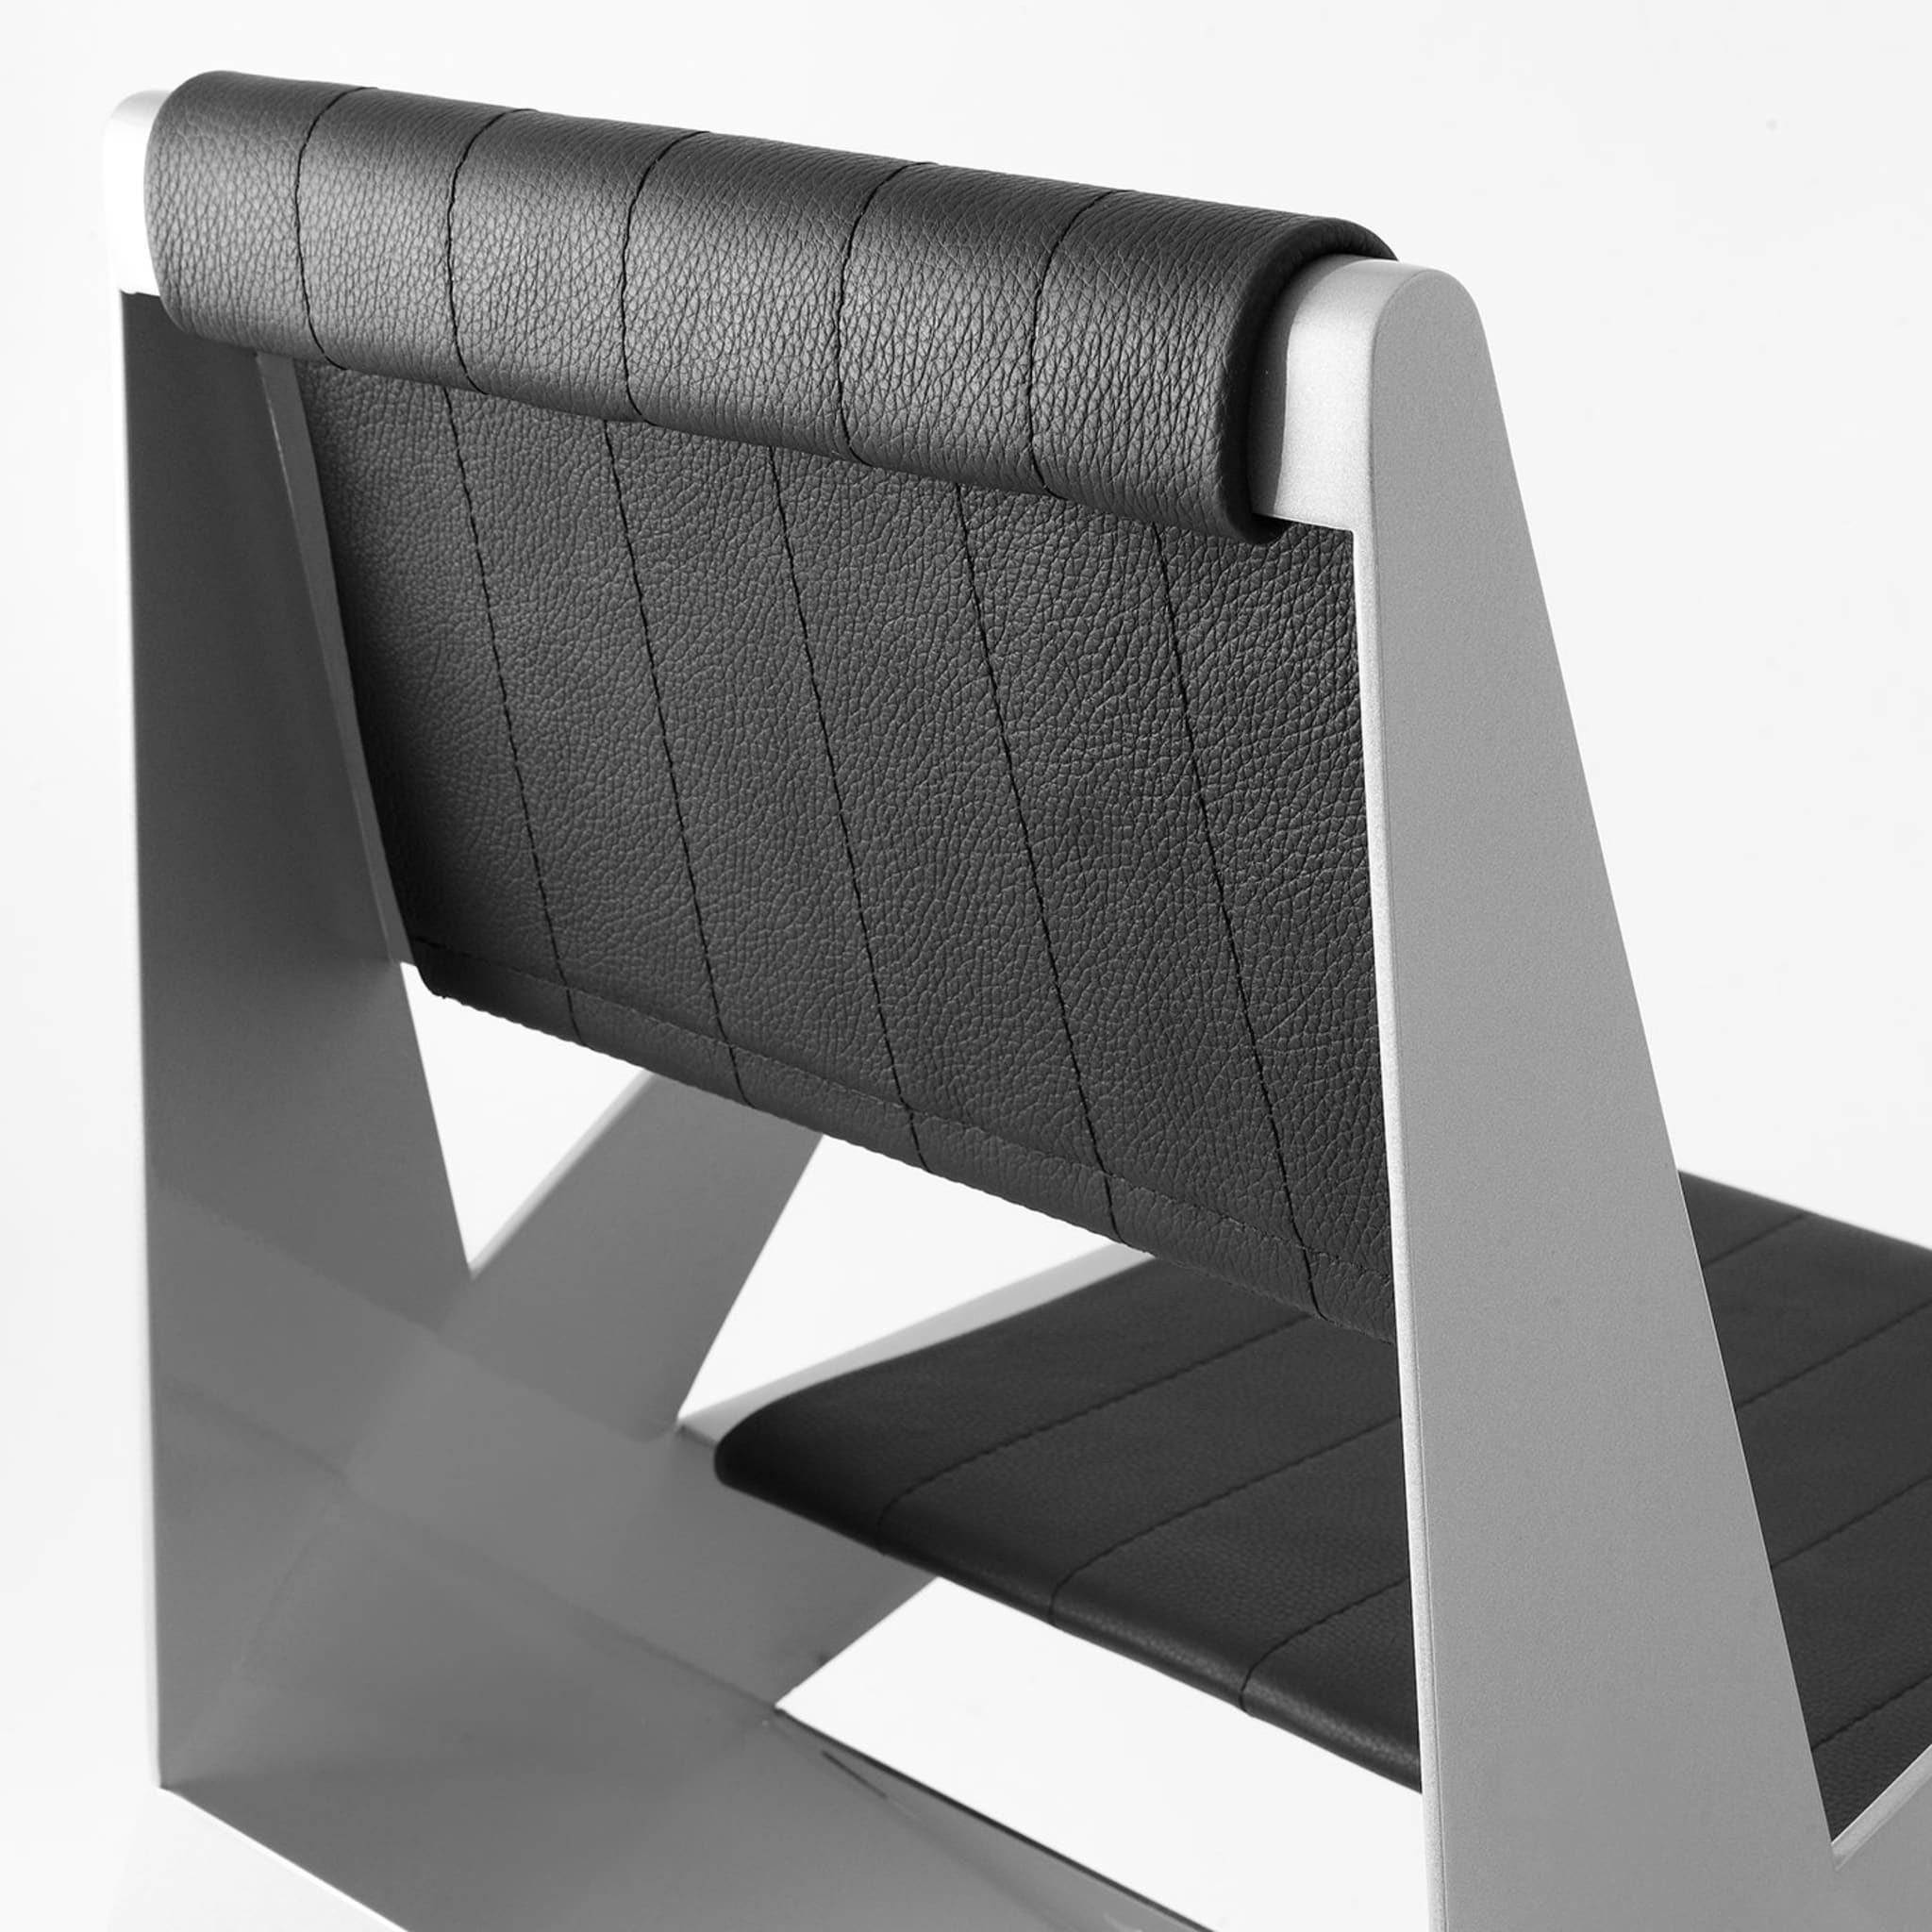 Star Silver Chair by Antonio Pio Saracino - Alternative view 3